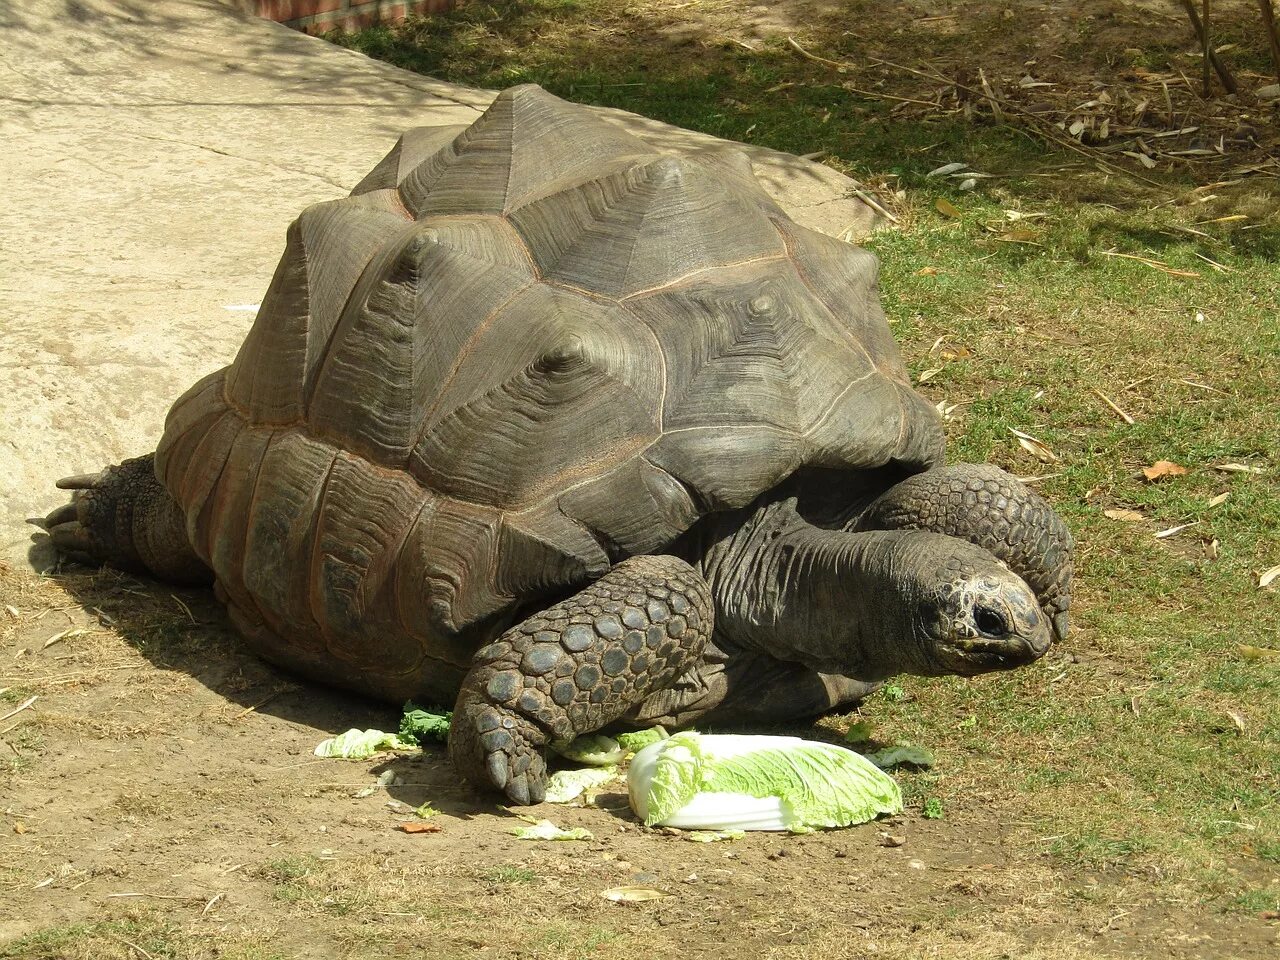 Галапагосская черепаха. Сухопутная черепаха Галапагосы. Галапагосская слоновая черепаха. Гигантская черепаха (Testudo gigantea).